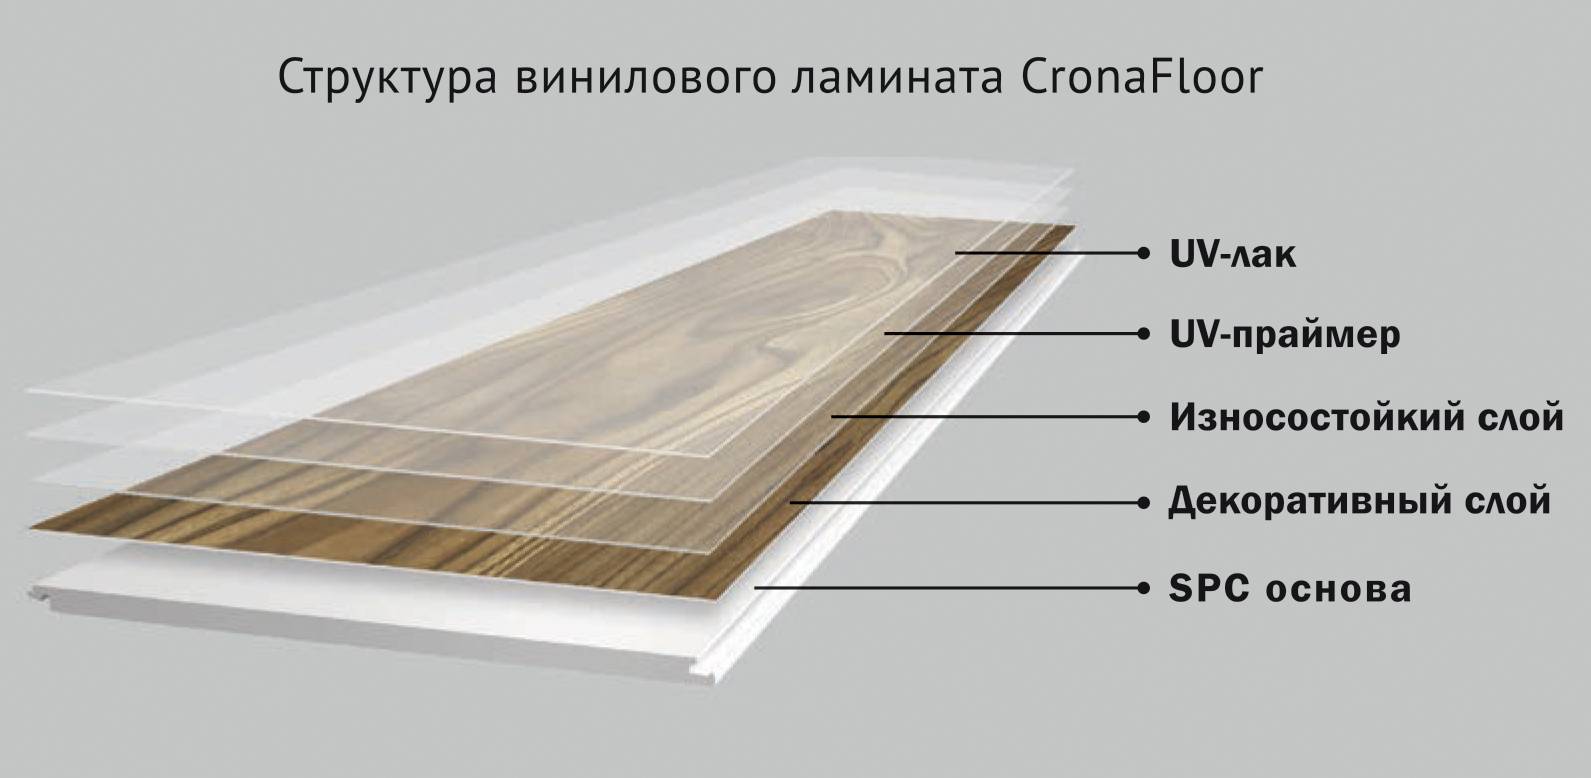 Укладка виниловой плитки на пол своими руками подробные инструкции